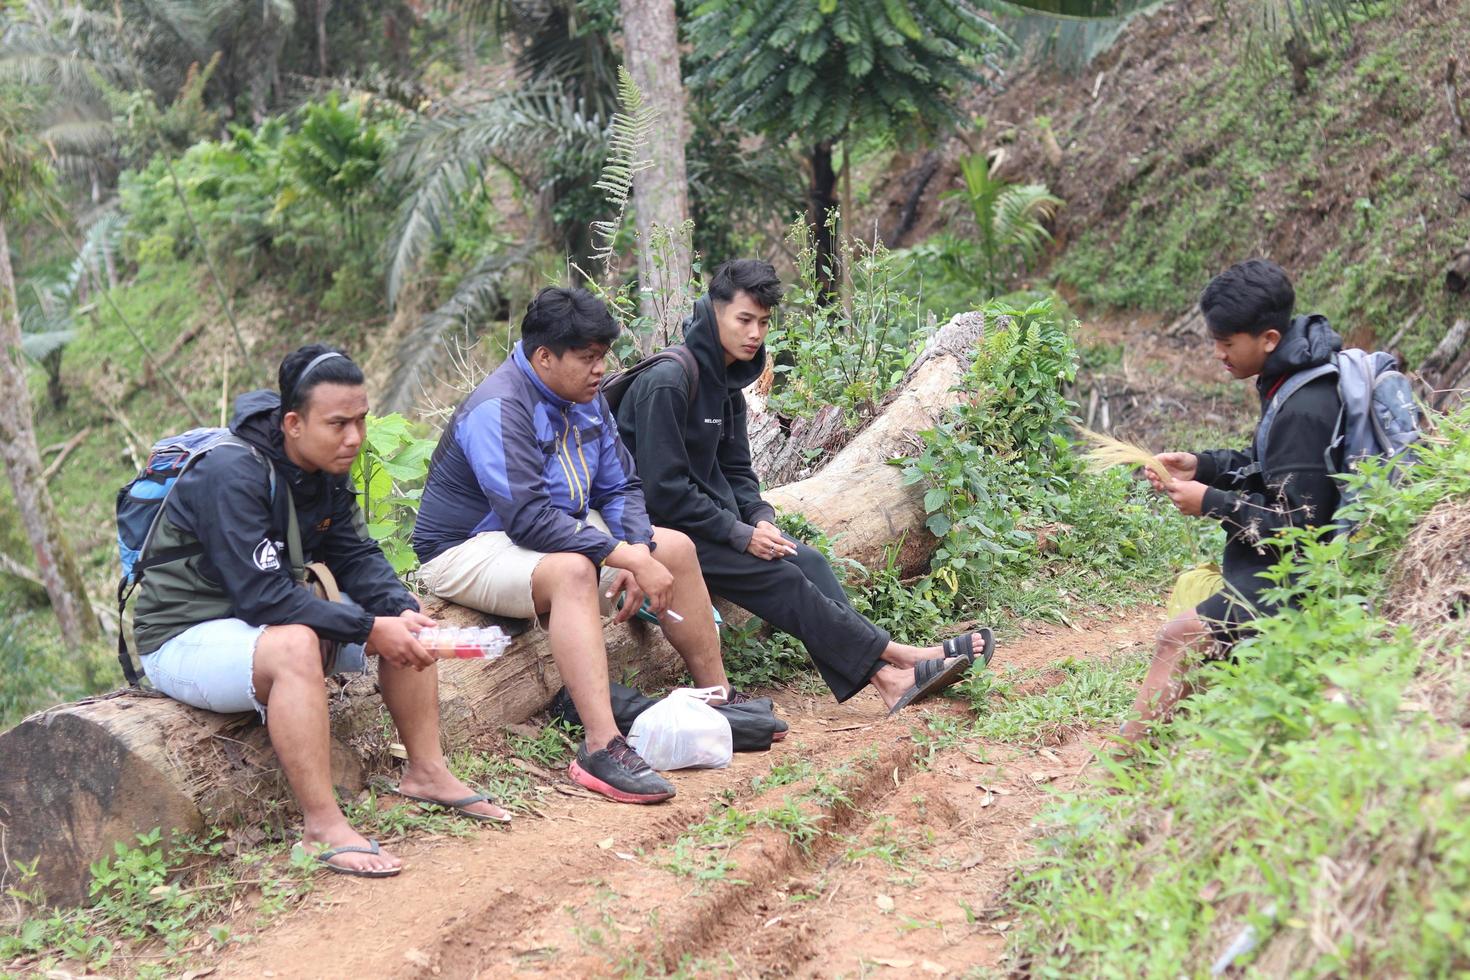 gorontalo, 5 feb 2023 - een groep van mensen camping samen in natuur foto